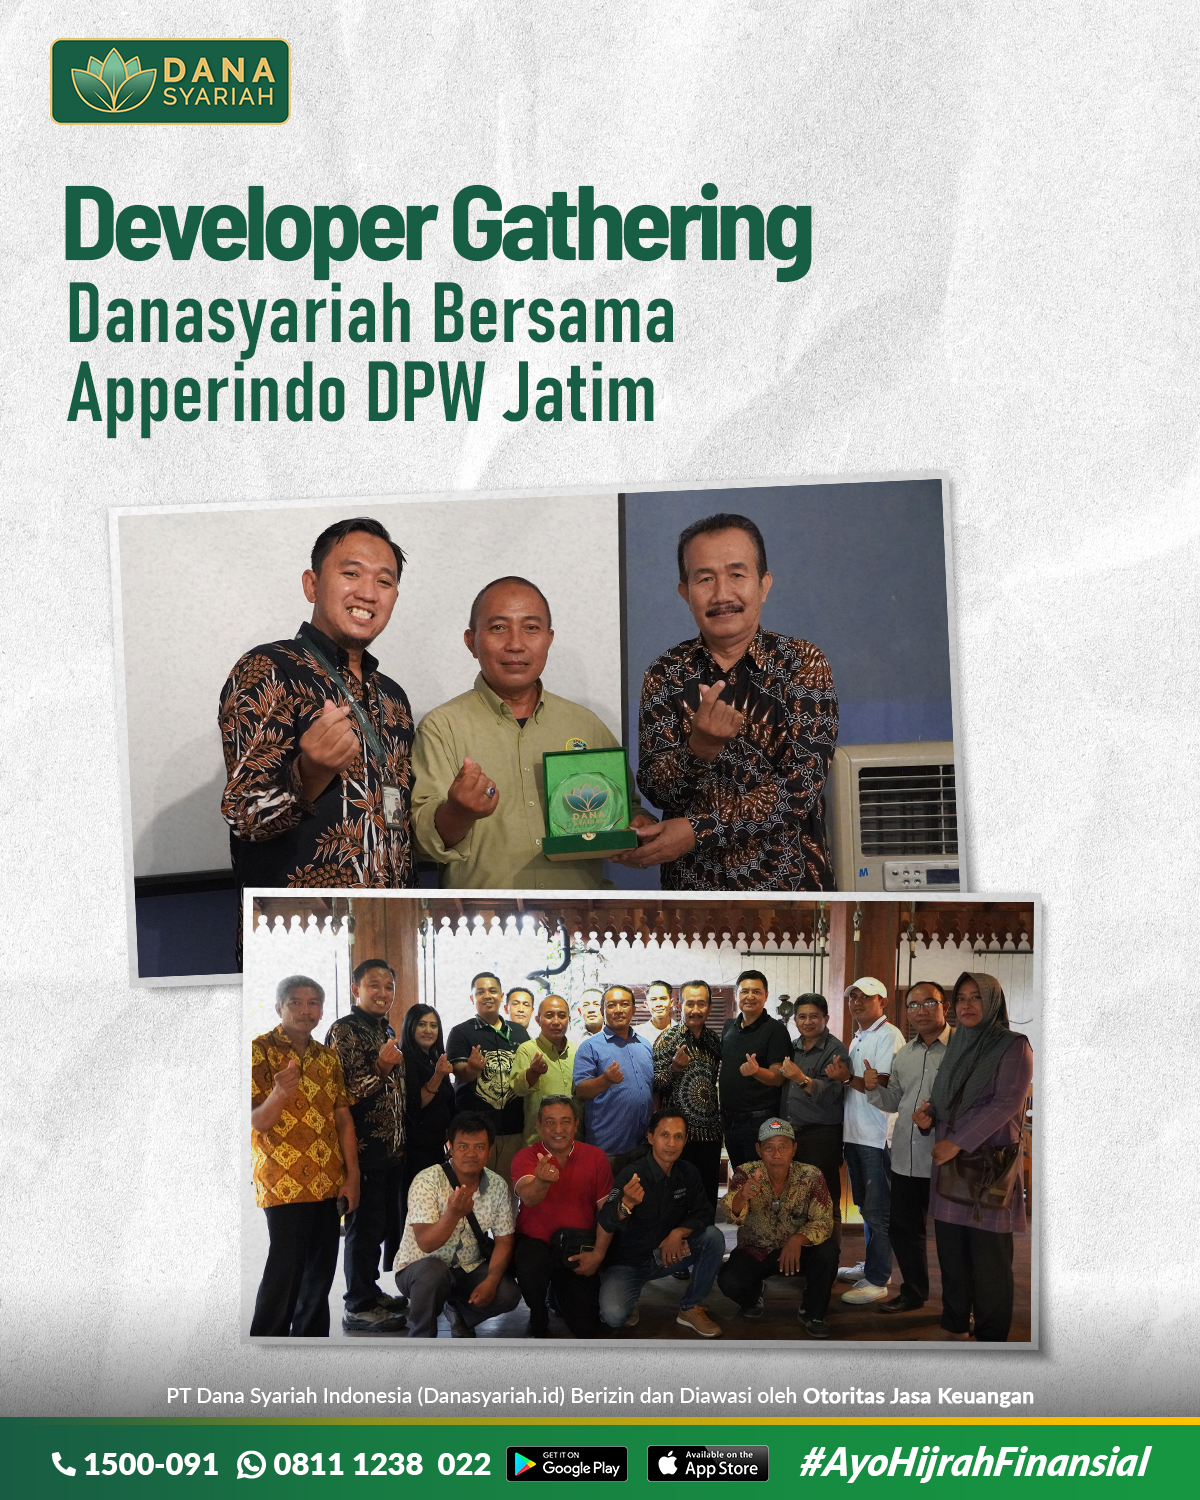 Dana Syariah Gathering Danasyariah bersama Apperindo DPW Jatim